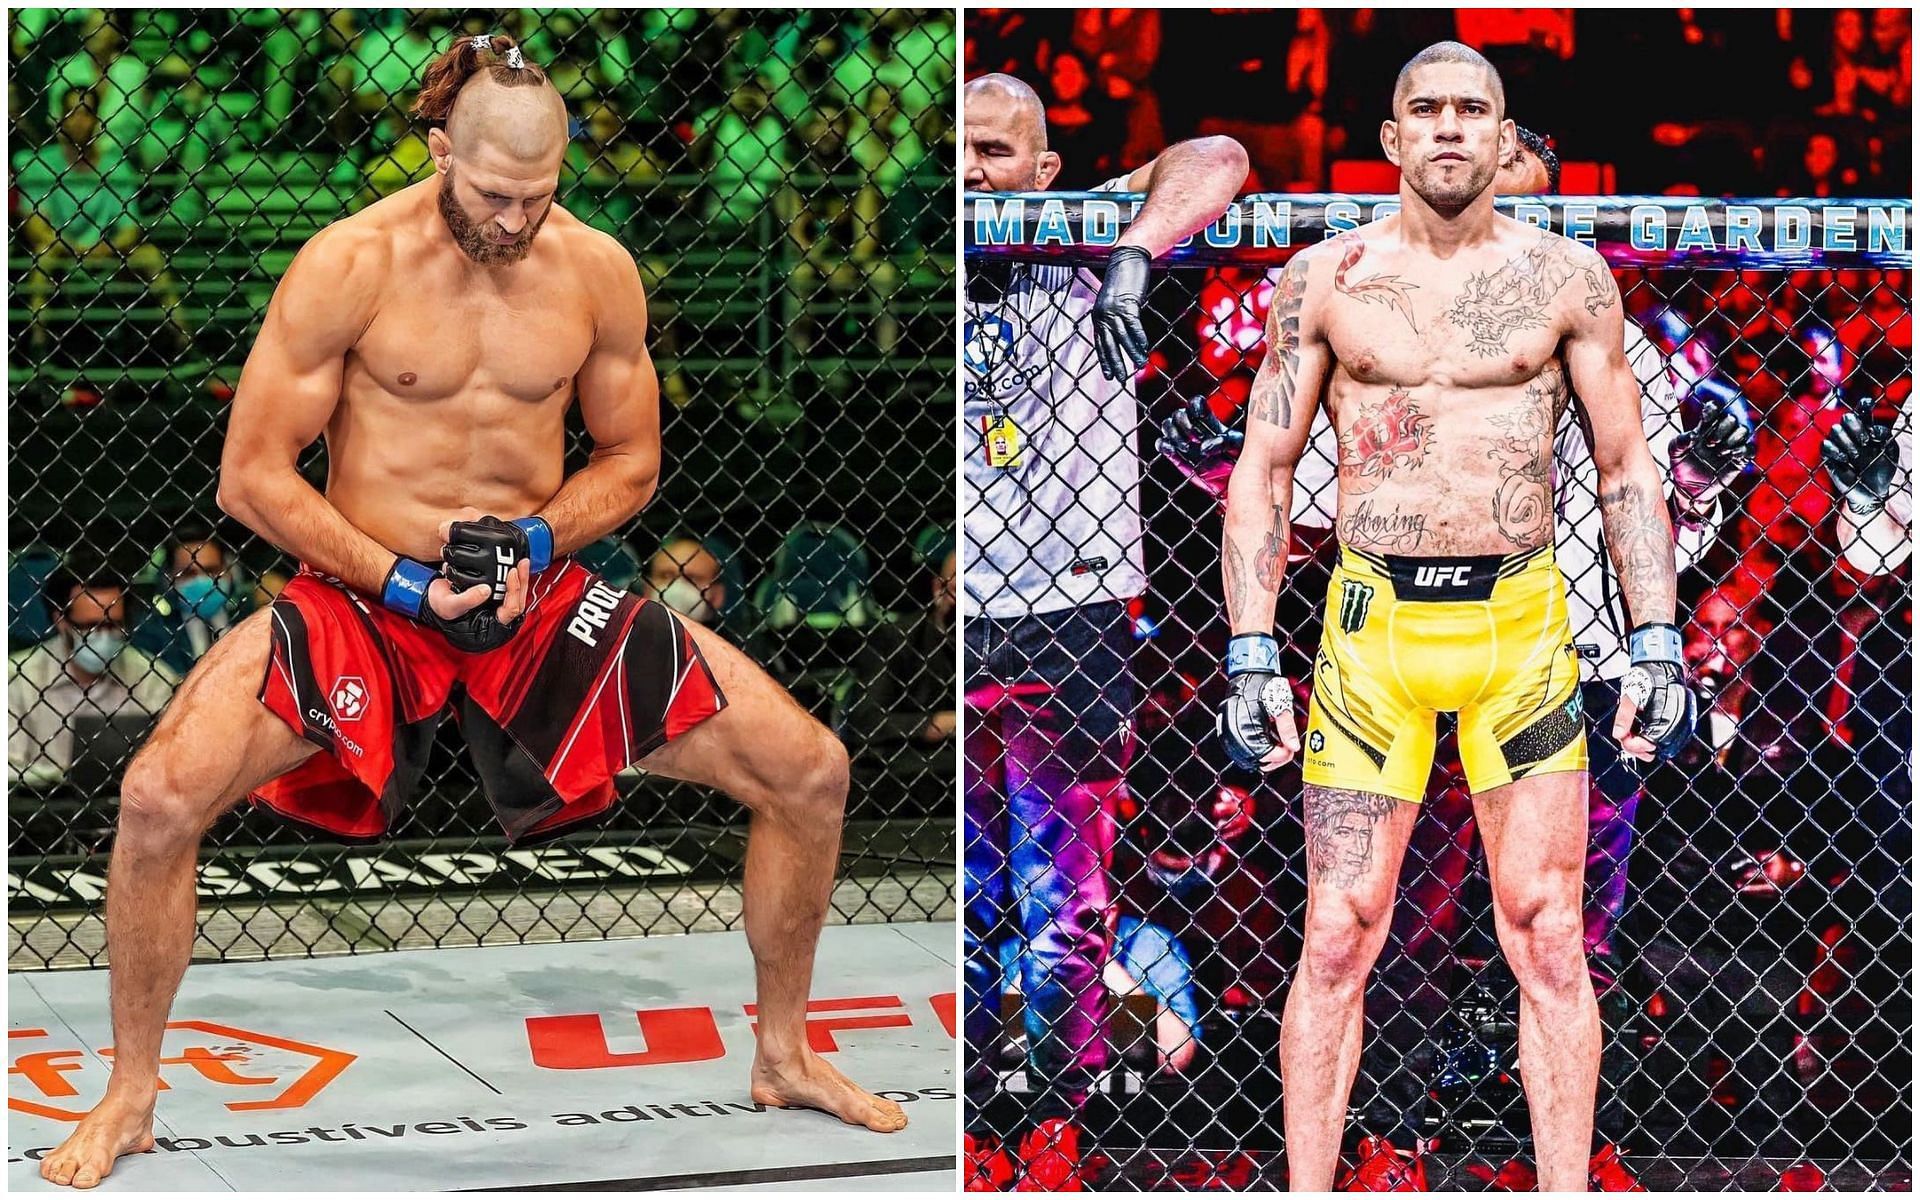 UFC 295: Jiri Prochazka vs. Alex Pereira